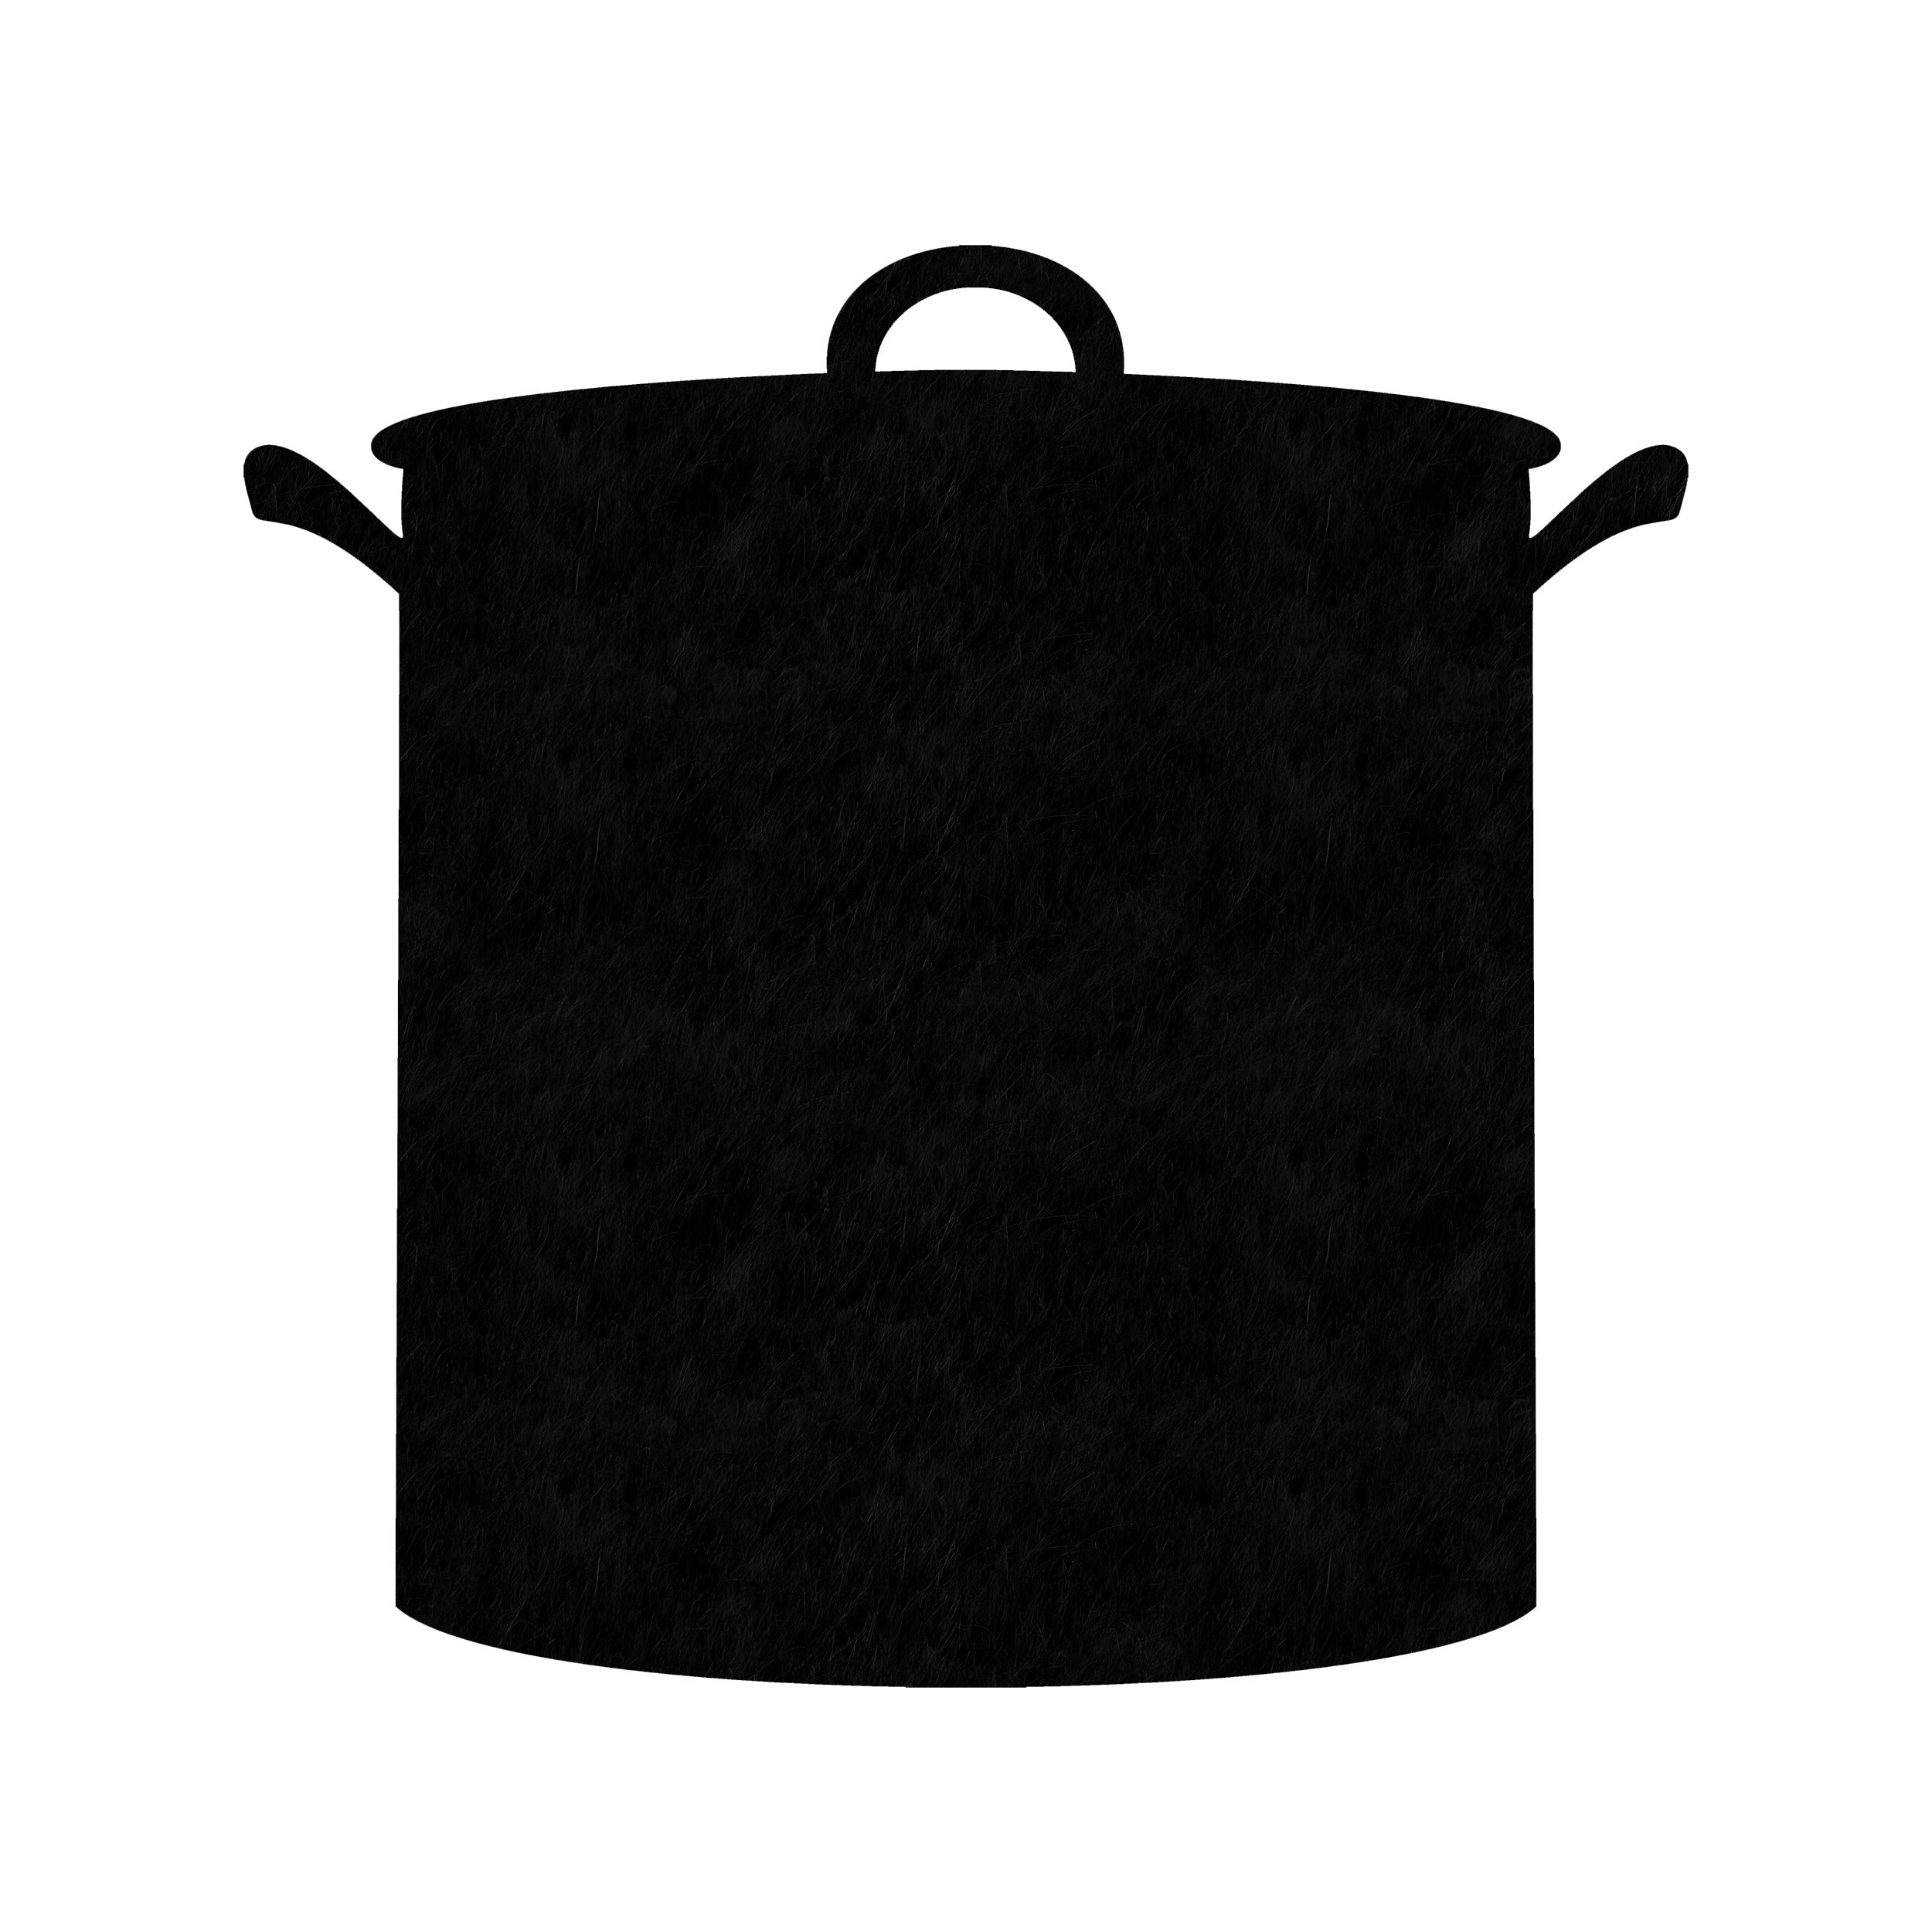 تخته سیاه مدل Black Pot سایز 30×30 سانتی متر